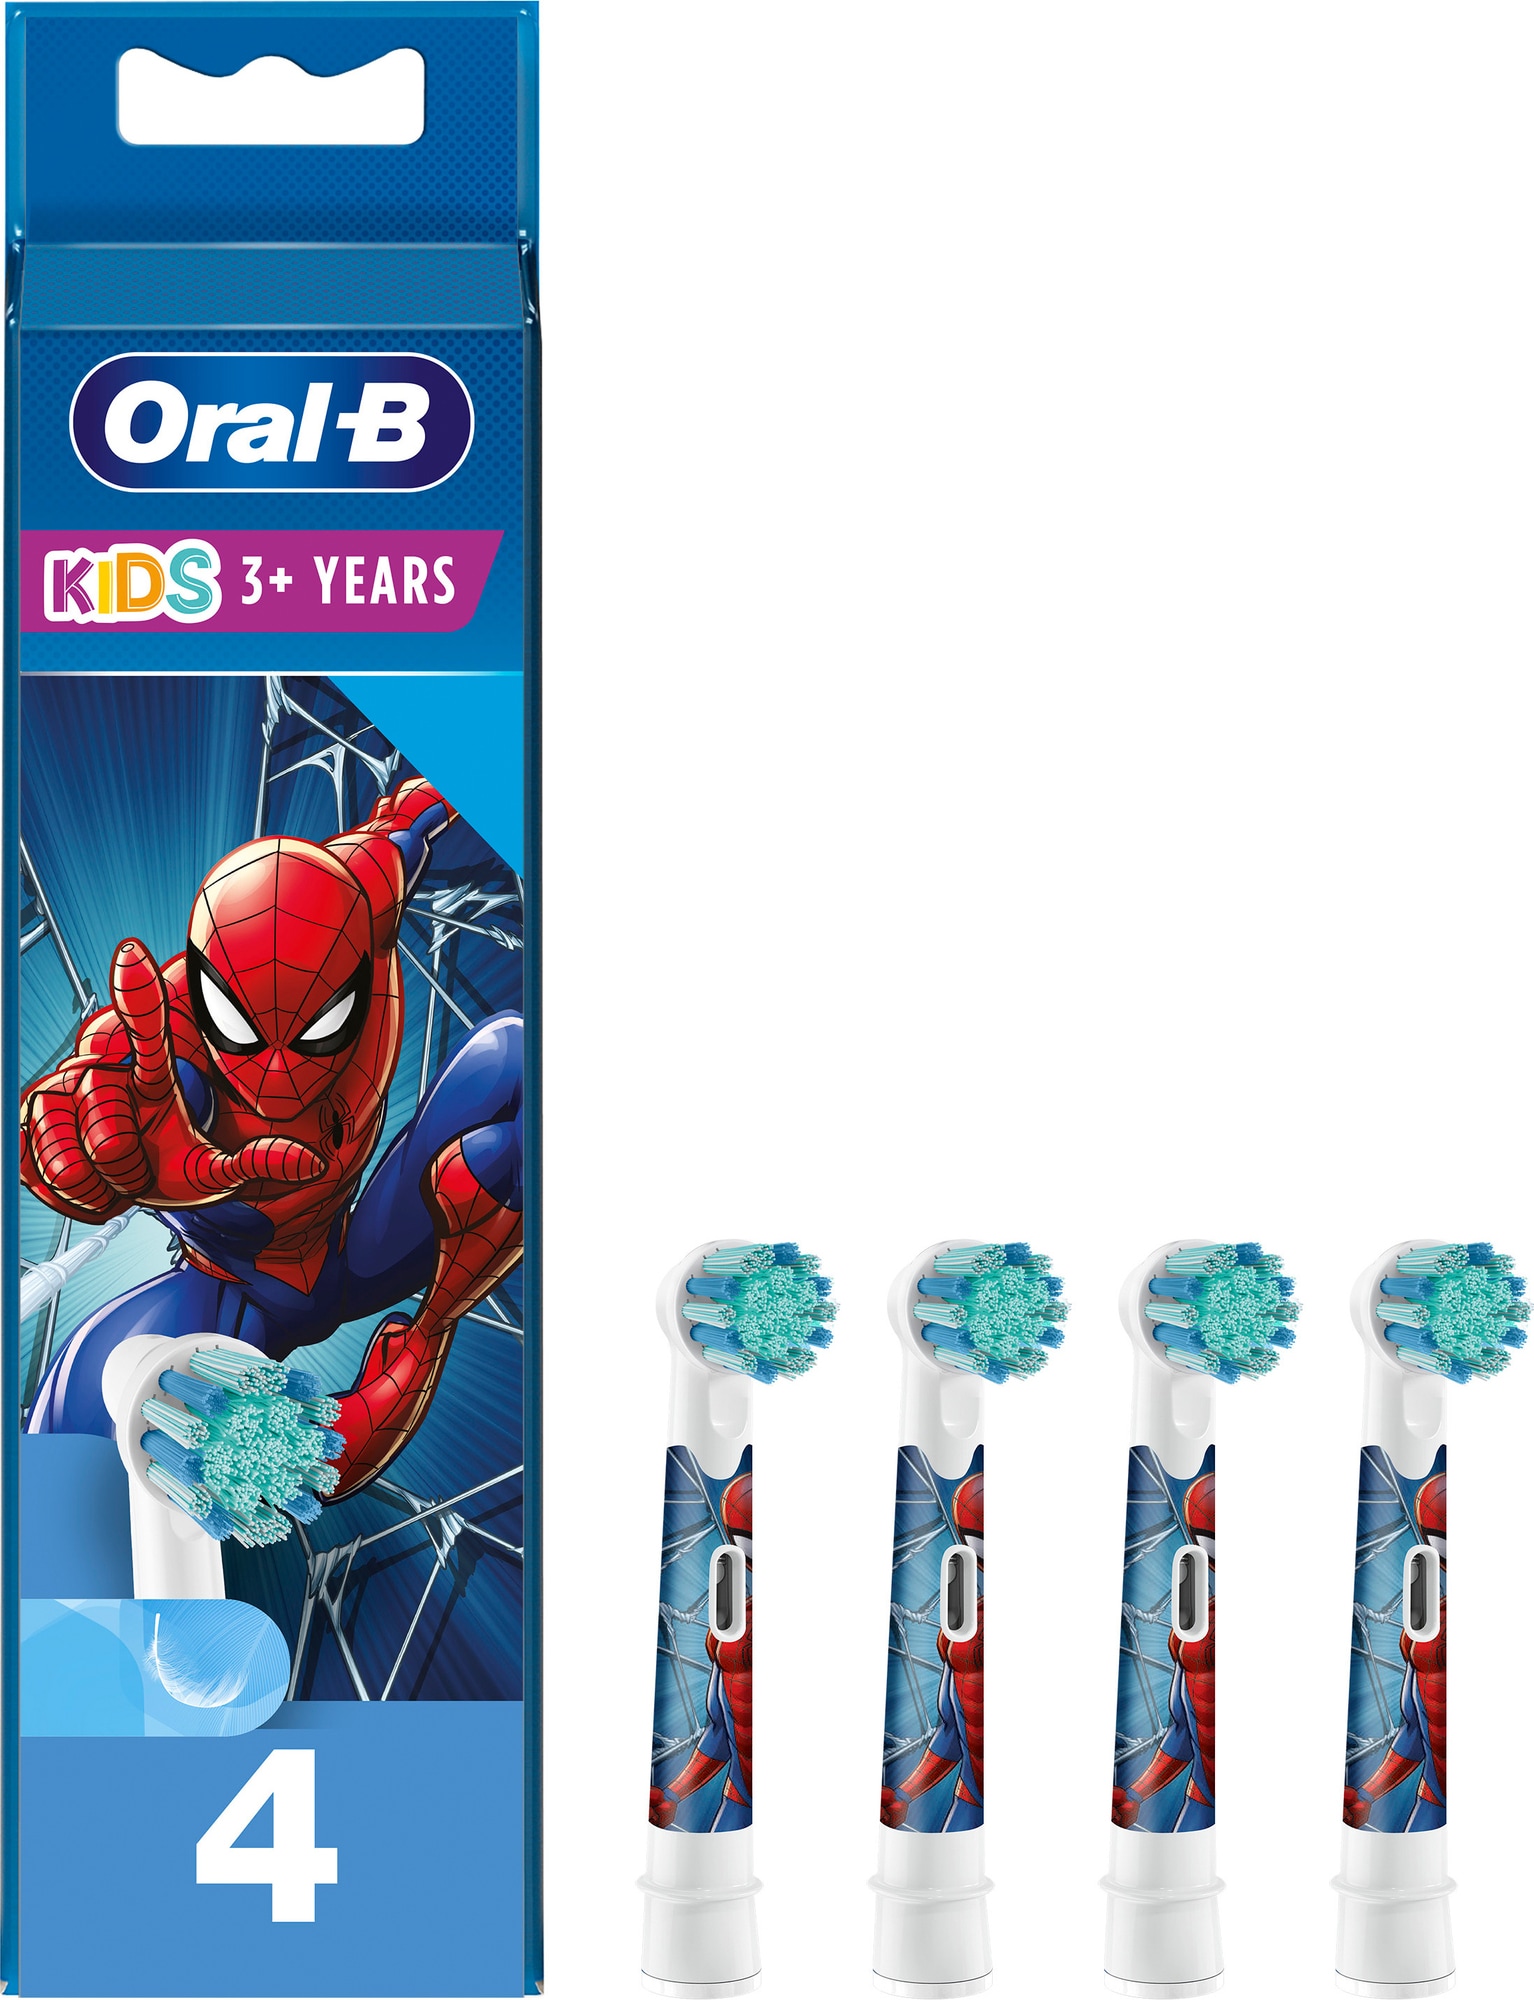 #1 på vores liste over tandbørstehoveder er Tandbørstehoveder